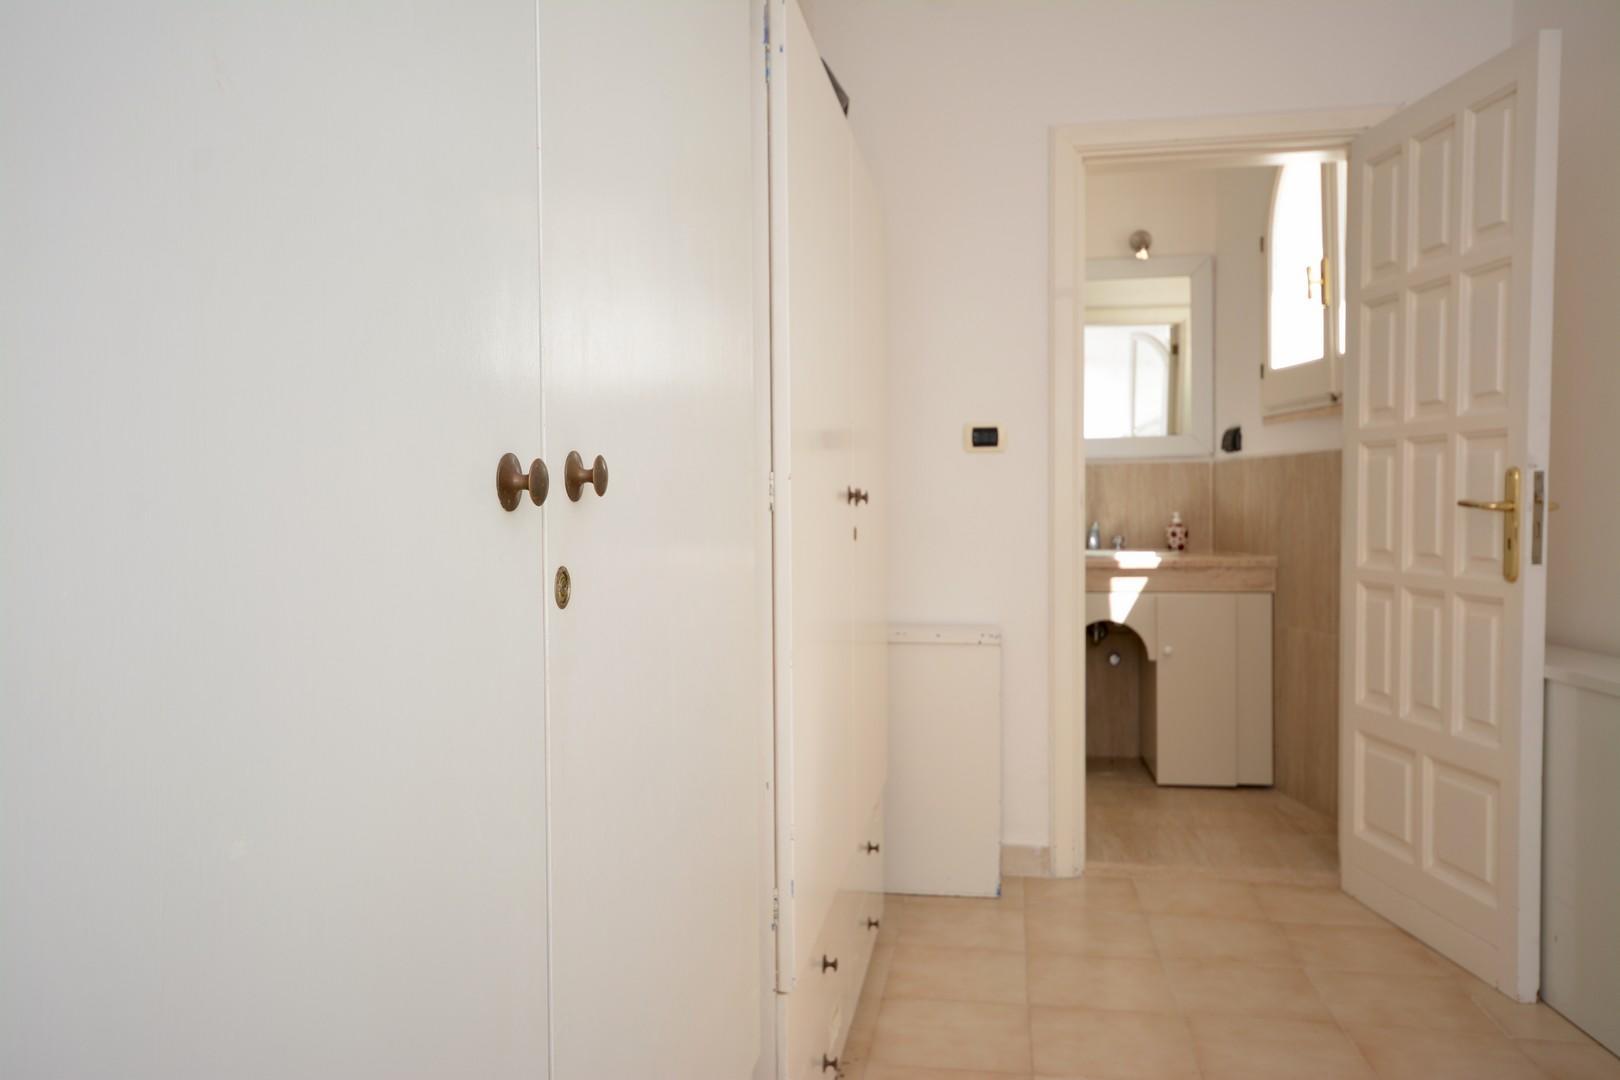 Livello inferiore -Suite - camera matrimoniale acesso al bagno